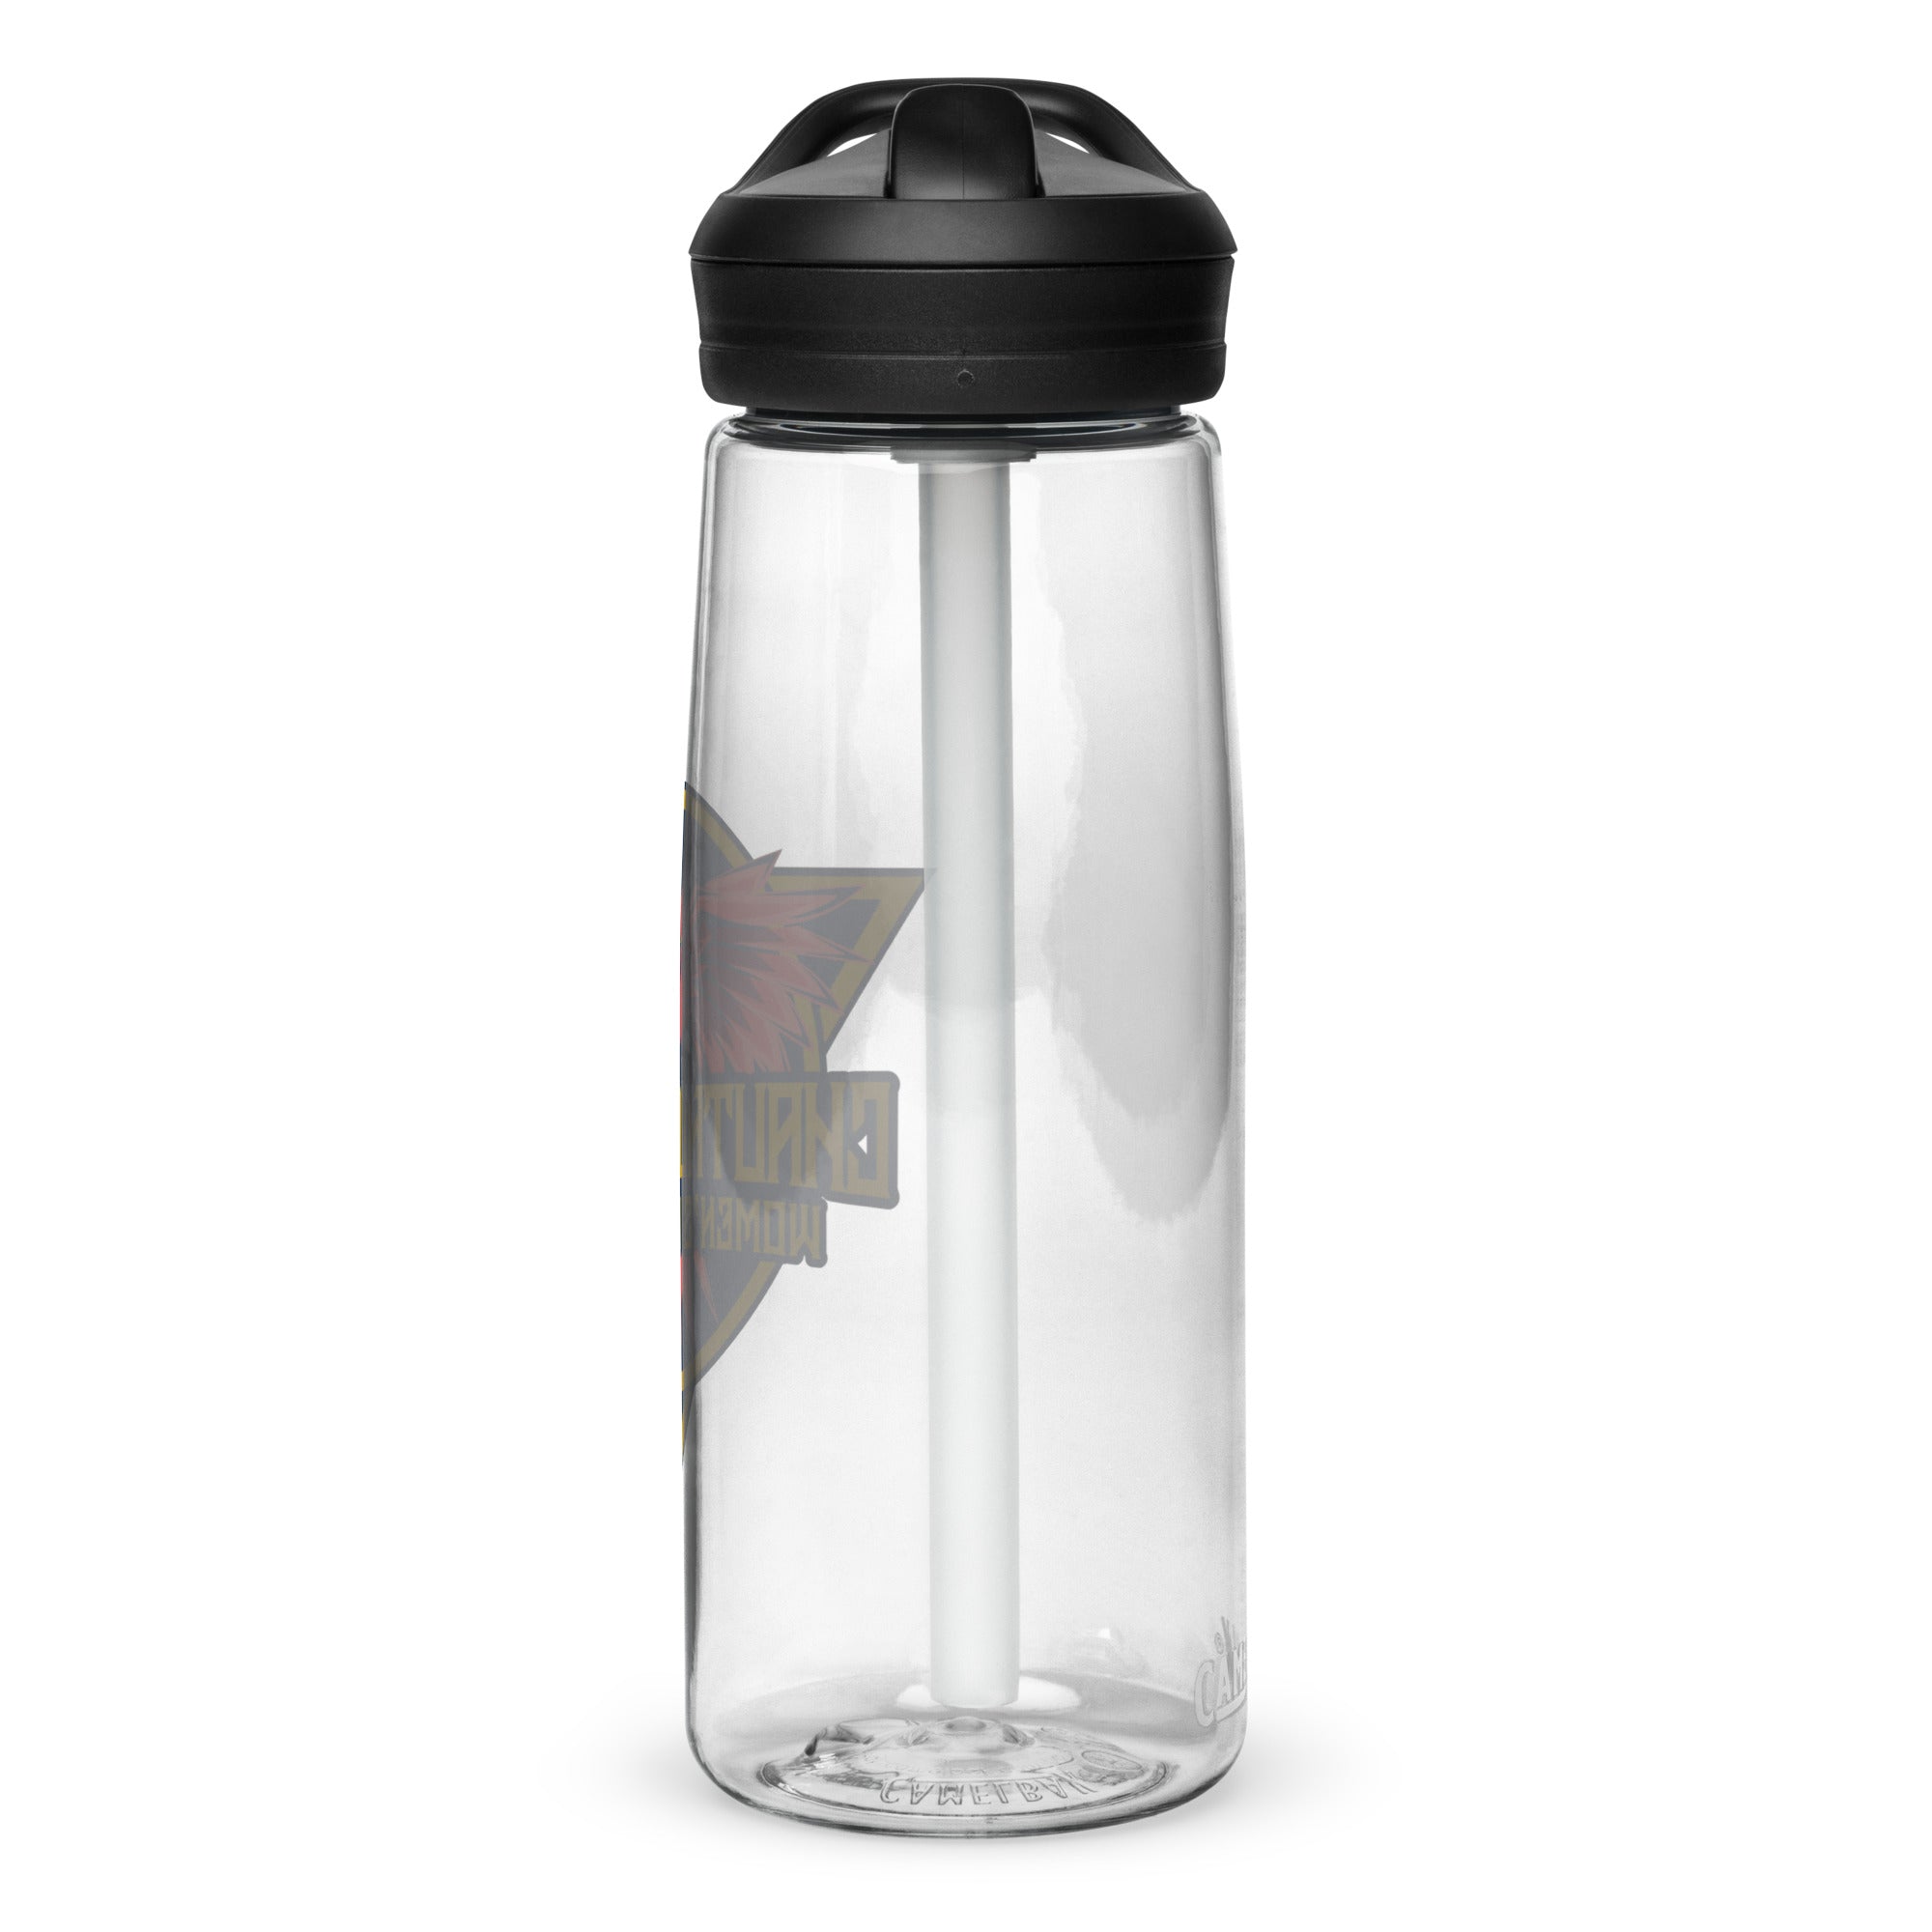 CLCS Sports water bottle